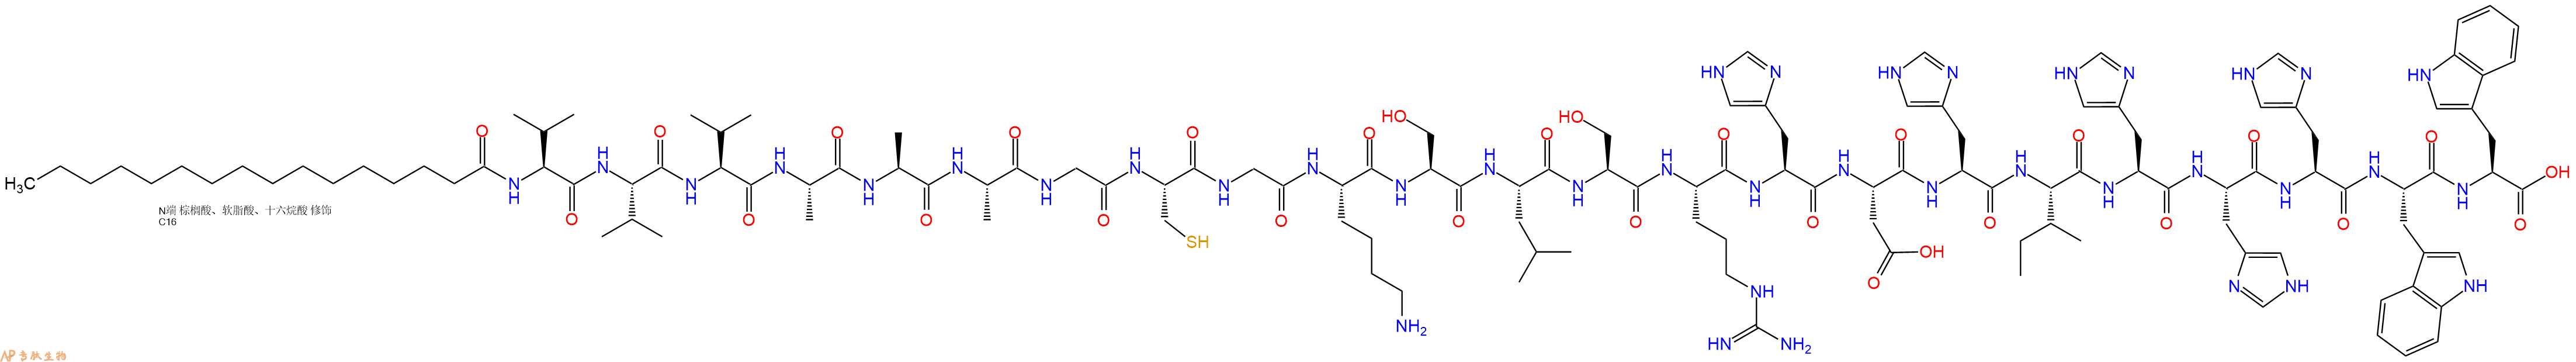 专肽生物产品棕榈酸-VVVAAAGCGKSLSRHDHIHHHWW